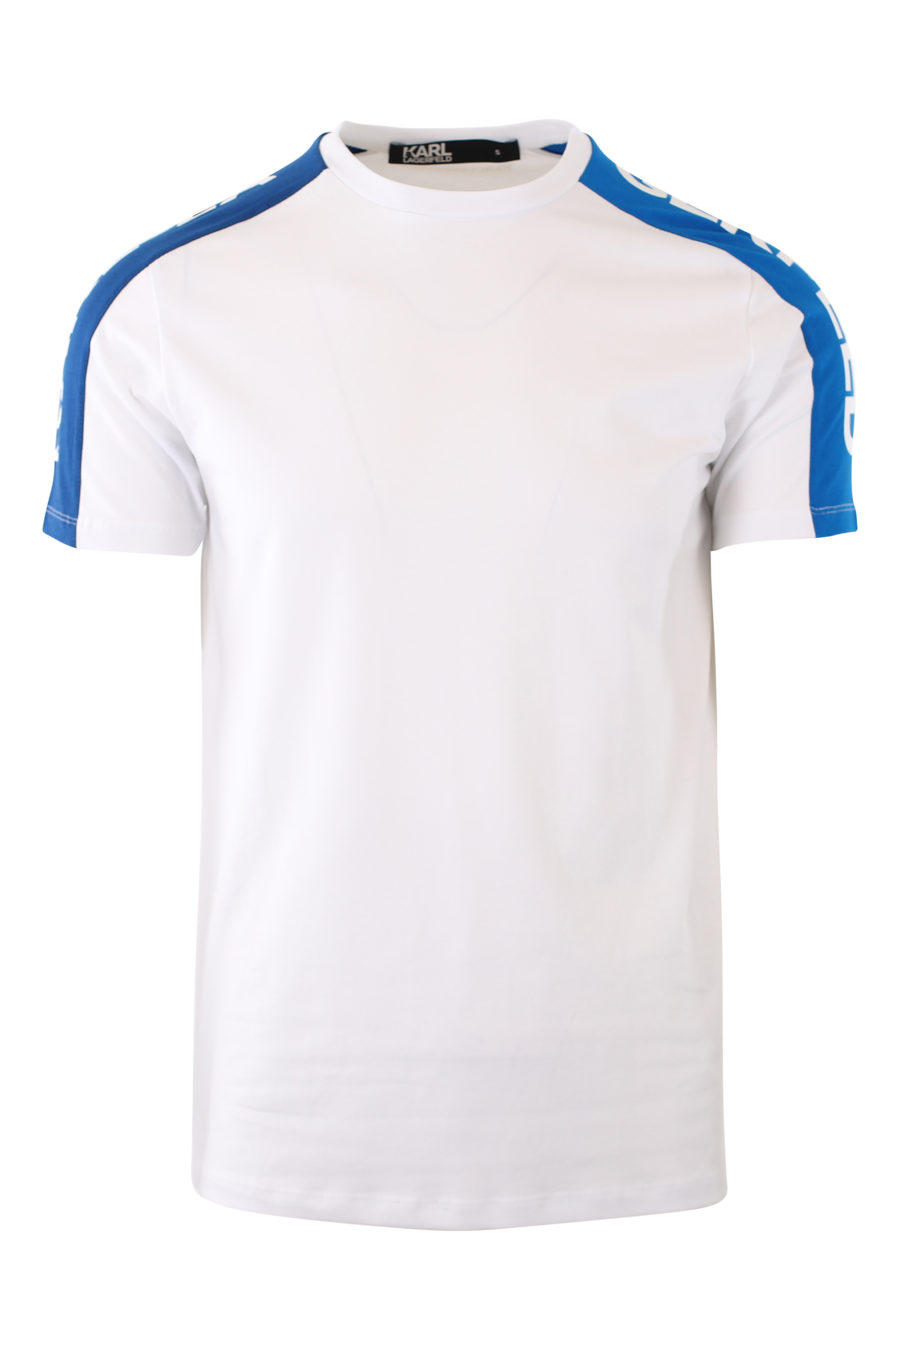 Camiseta blanca con logo en cinta azul en hombros - IMG 2107